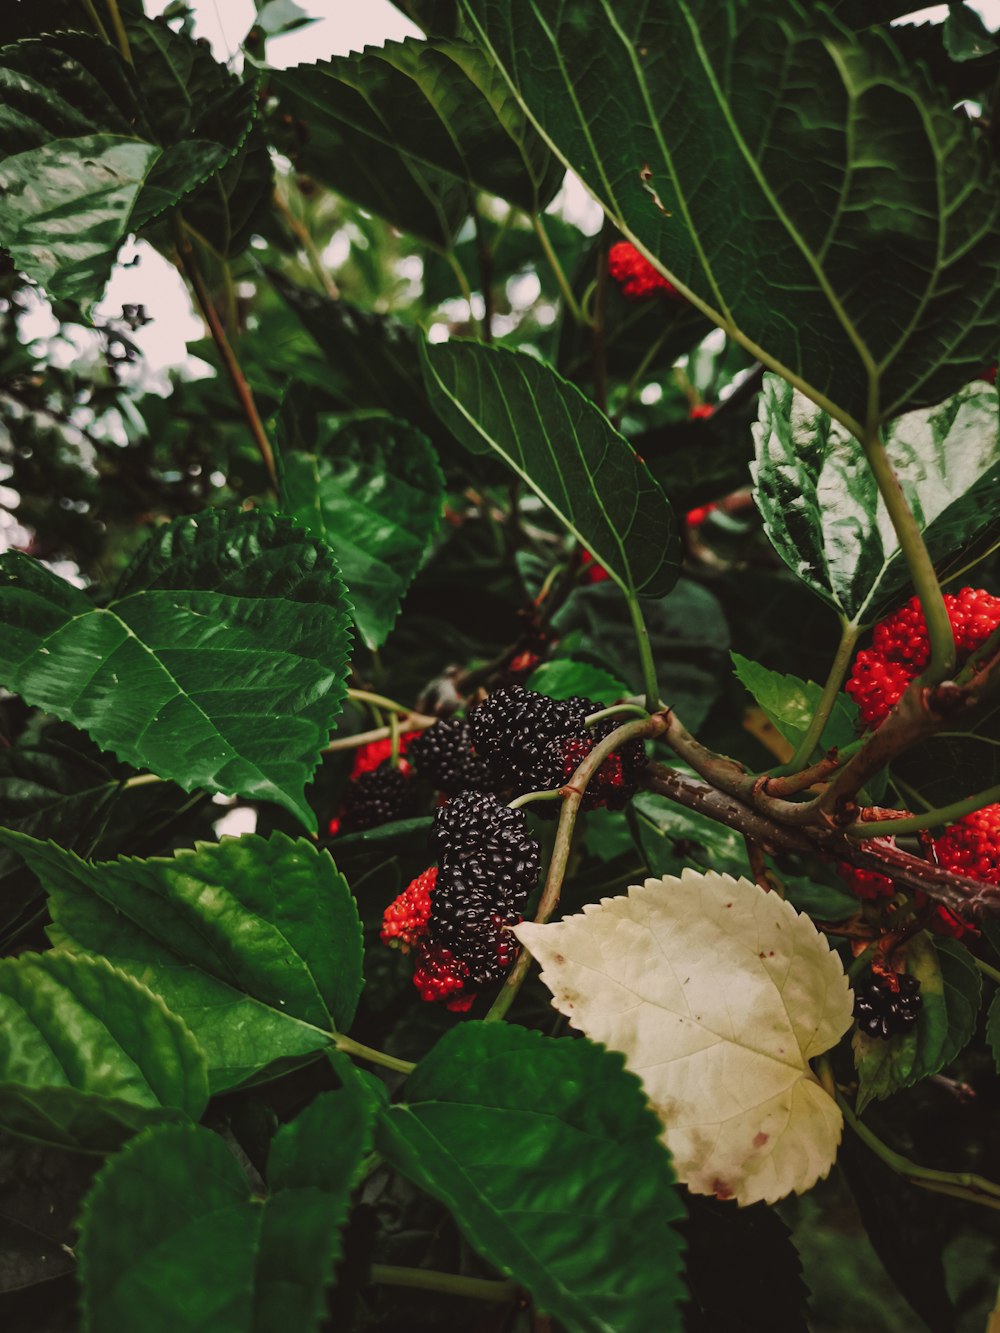 緑の葉に赤い丸い果実